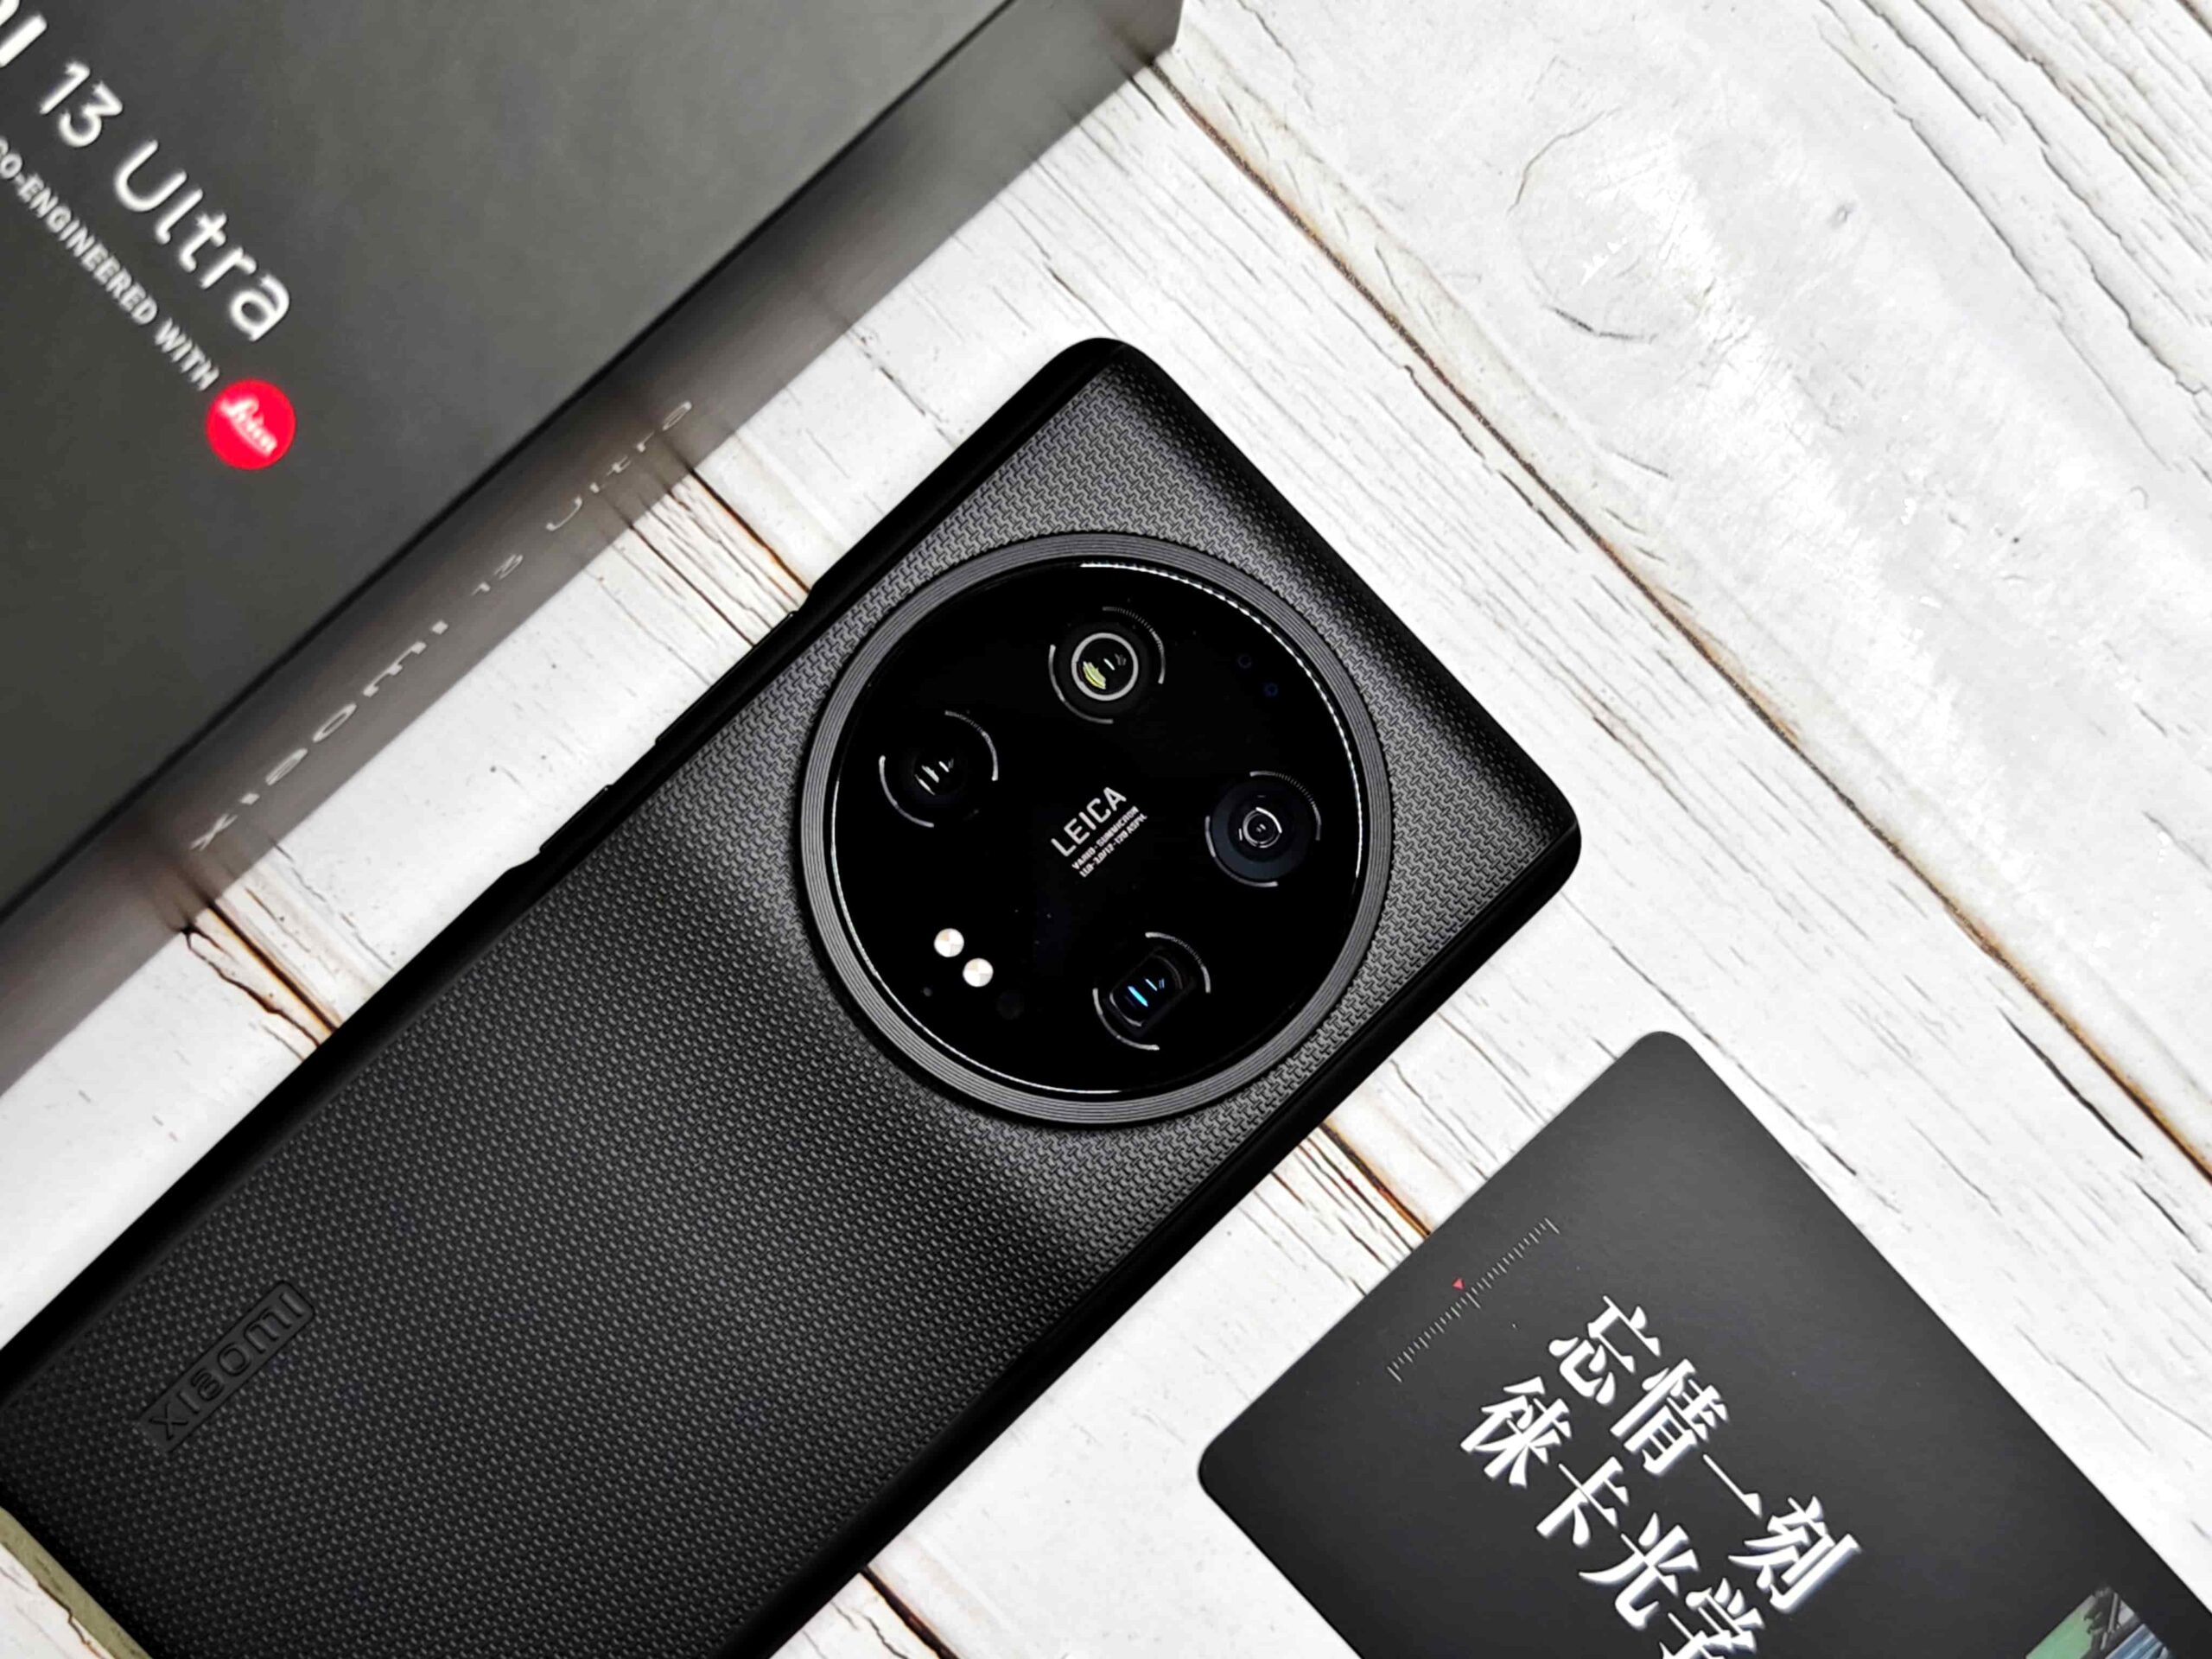 小米13 Ultra 開箱與購買建議分享 – 精緻外型驚人相機規格，台灣小米發表前搶先看